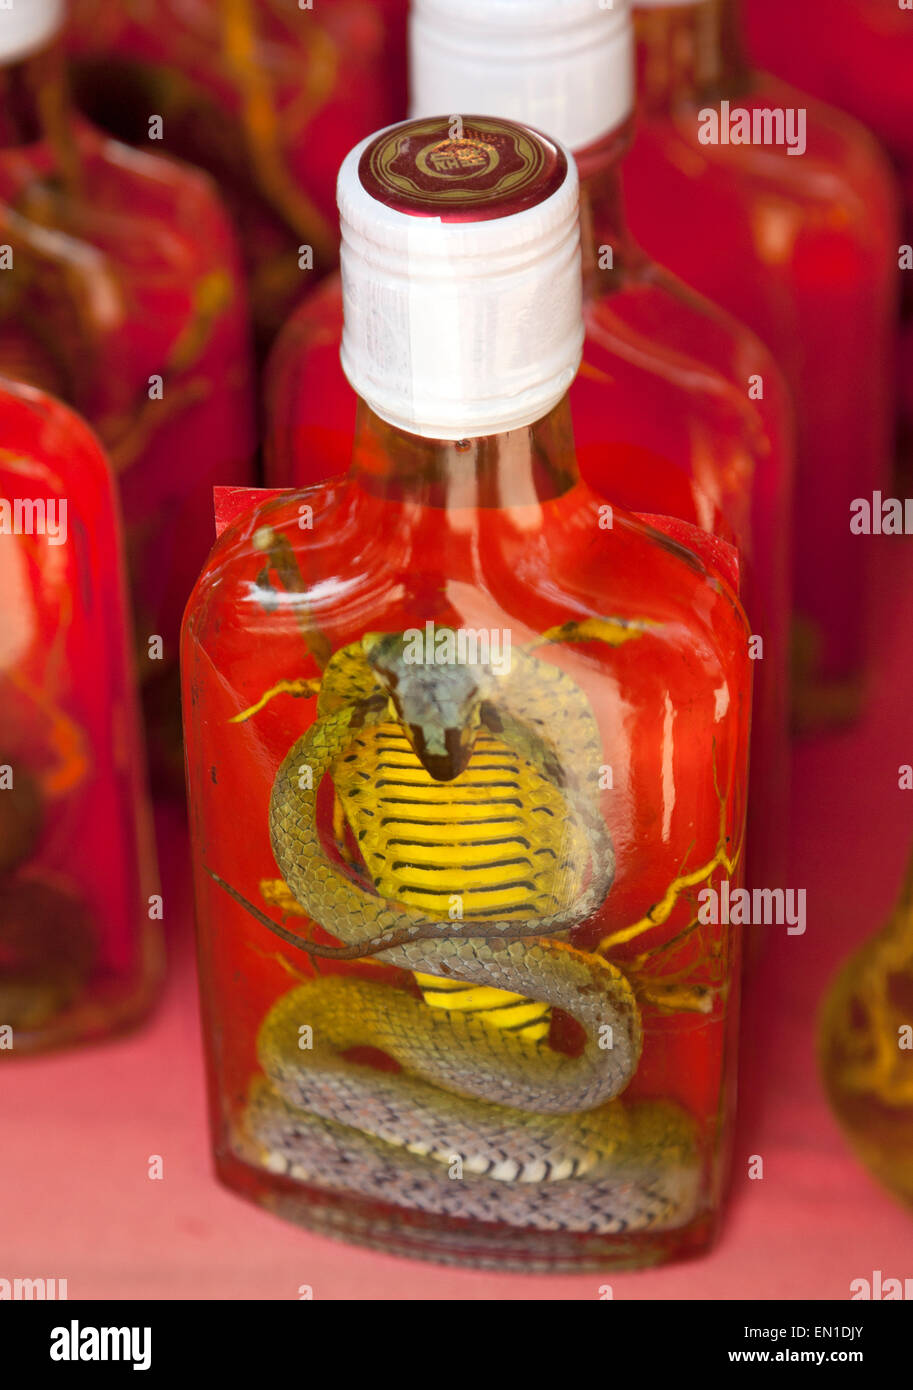 Don Sao isla, Laos, el Triángulo de Oro, puesto en el mercado vendiendo tónico exóticas bebidas alcohólicas que contengan cobra. Foto de stock